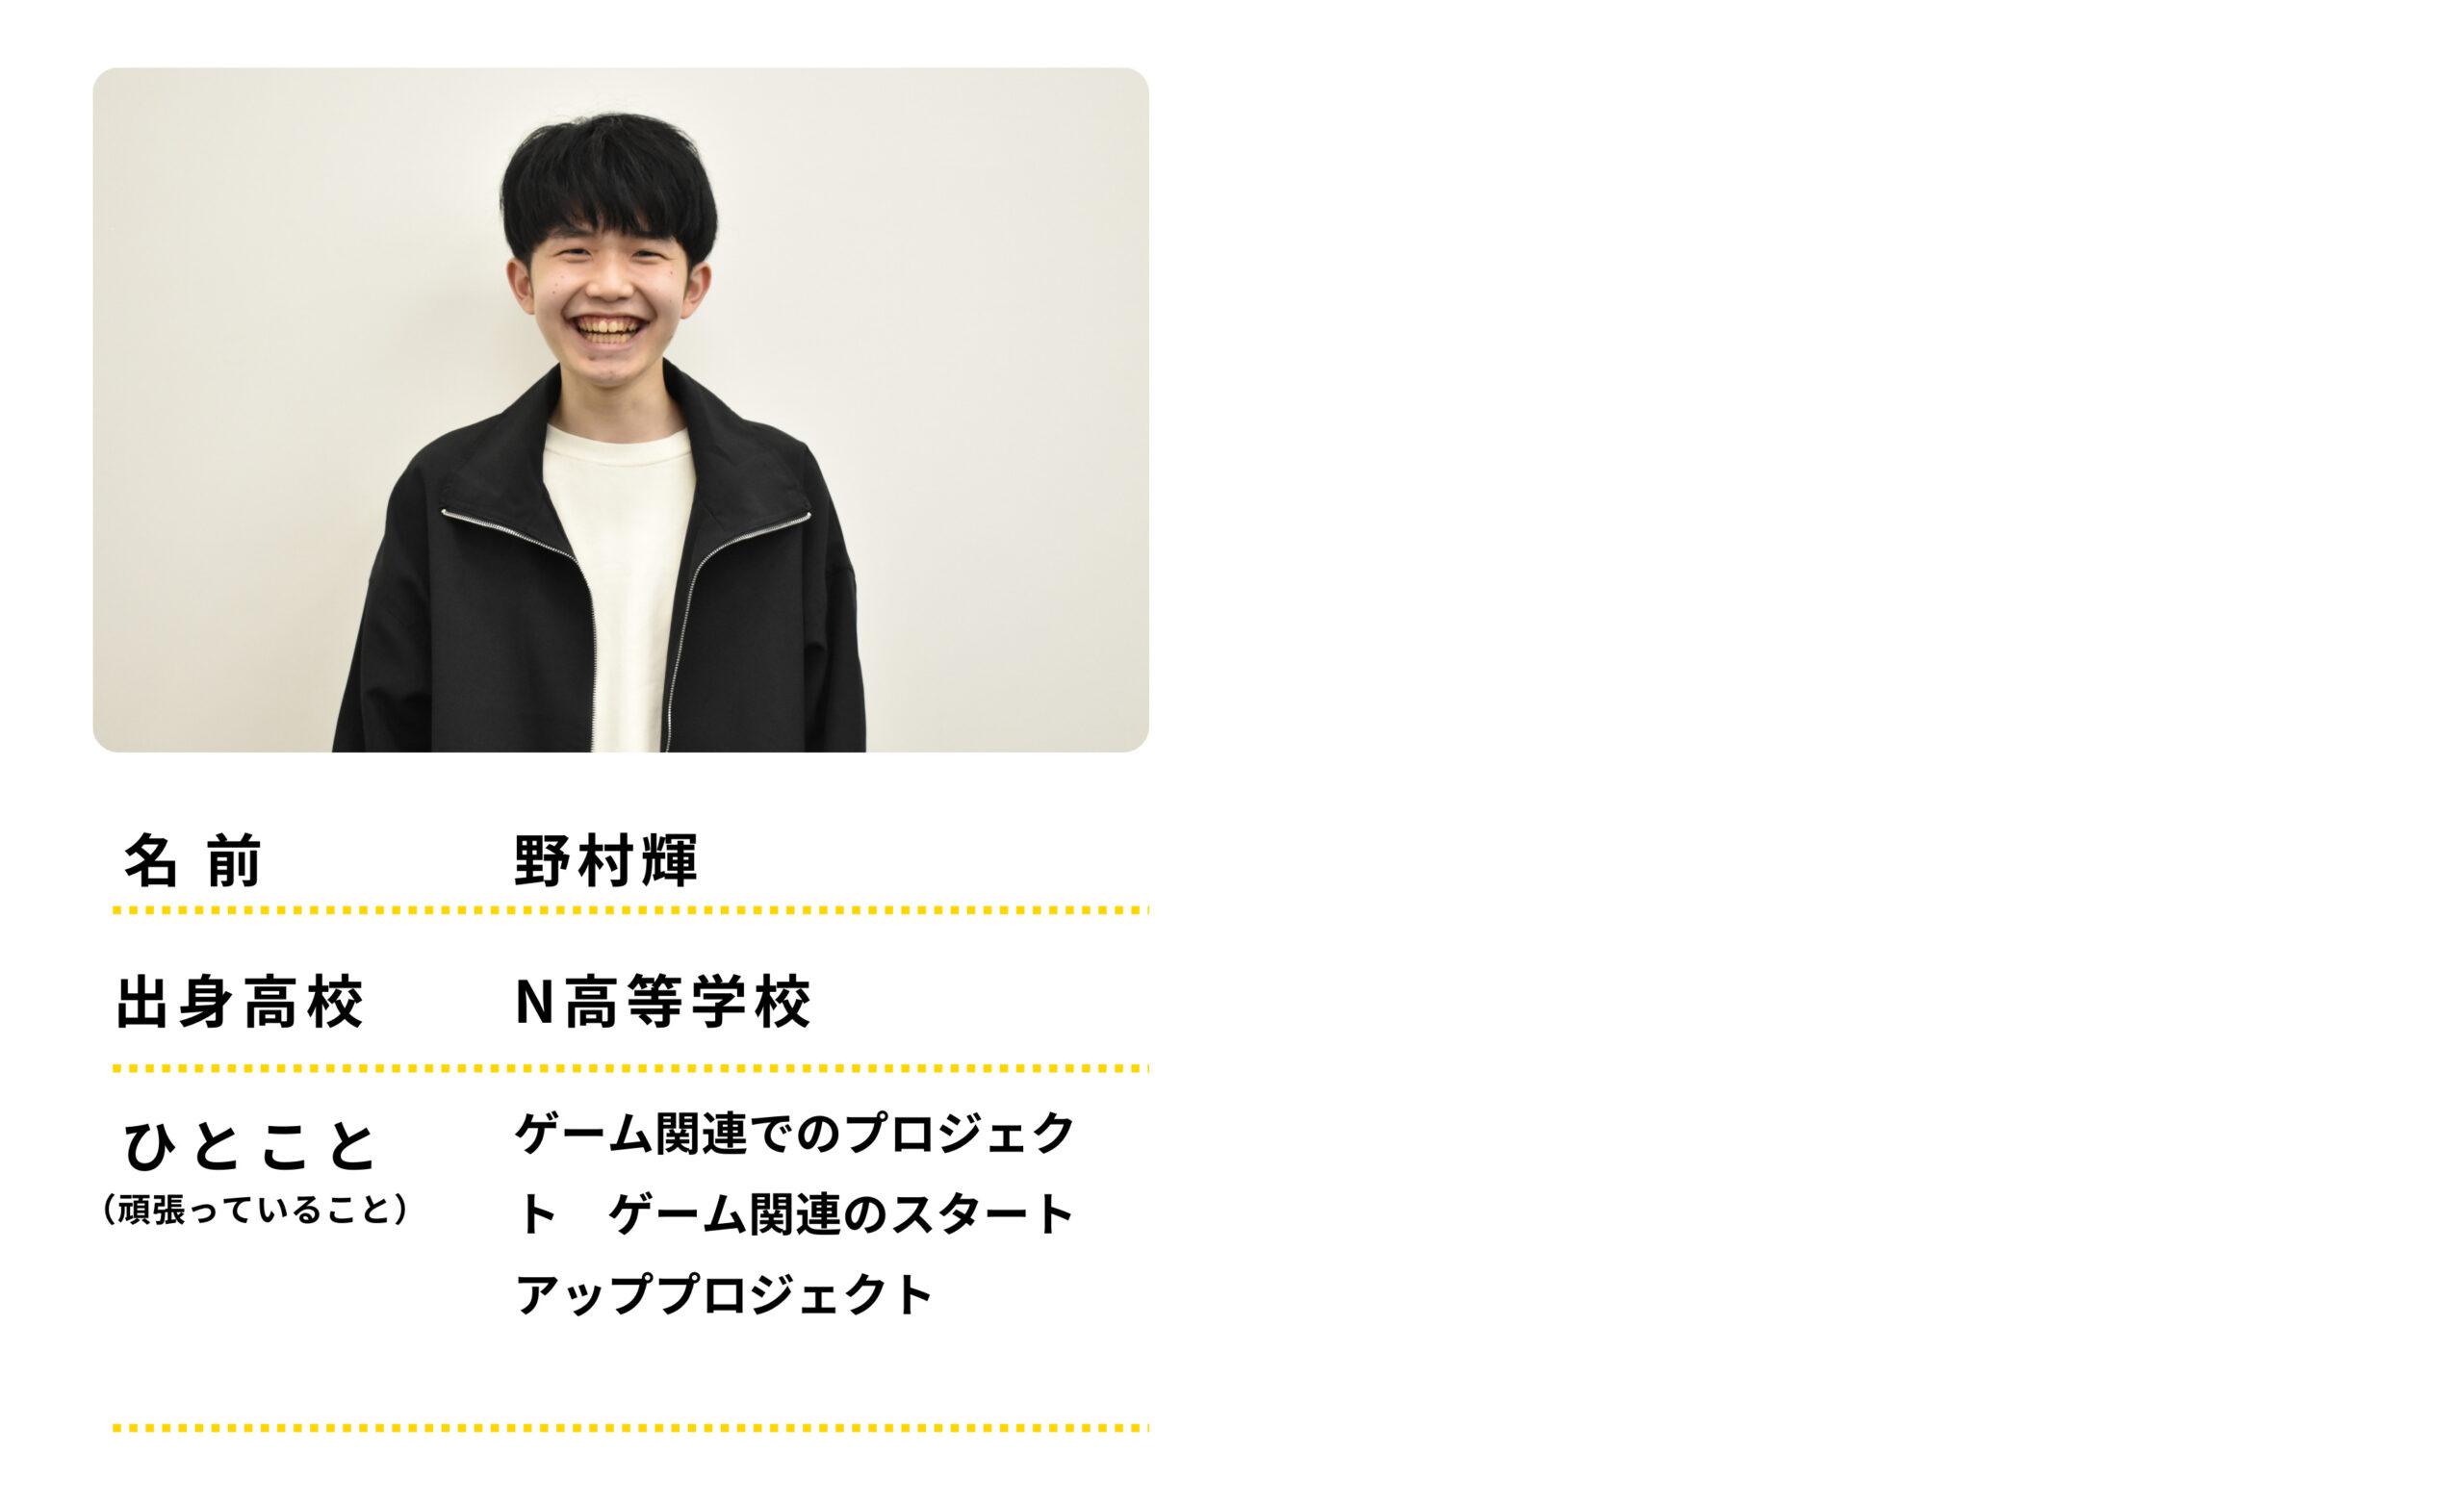 名前：野村輝　出身高校：Ｎ高等学校　ひとこと：ゲーム関連でのプロジェクト　げーむかんれんのスタートアッププロジェクトをがんばっています。